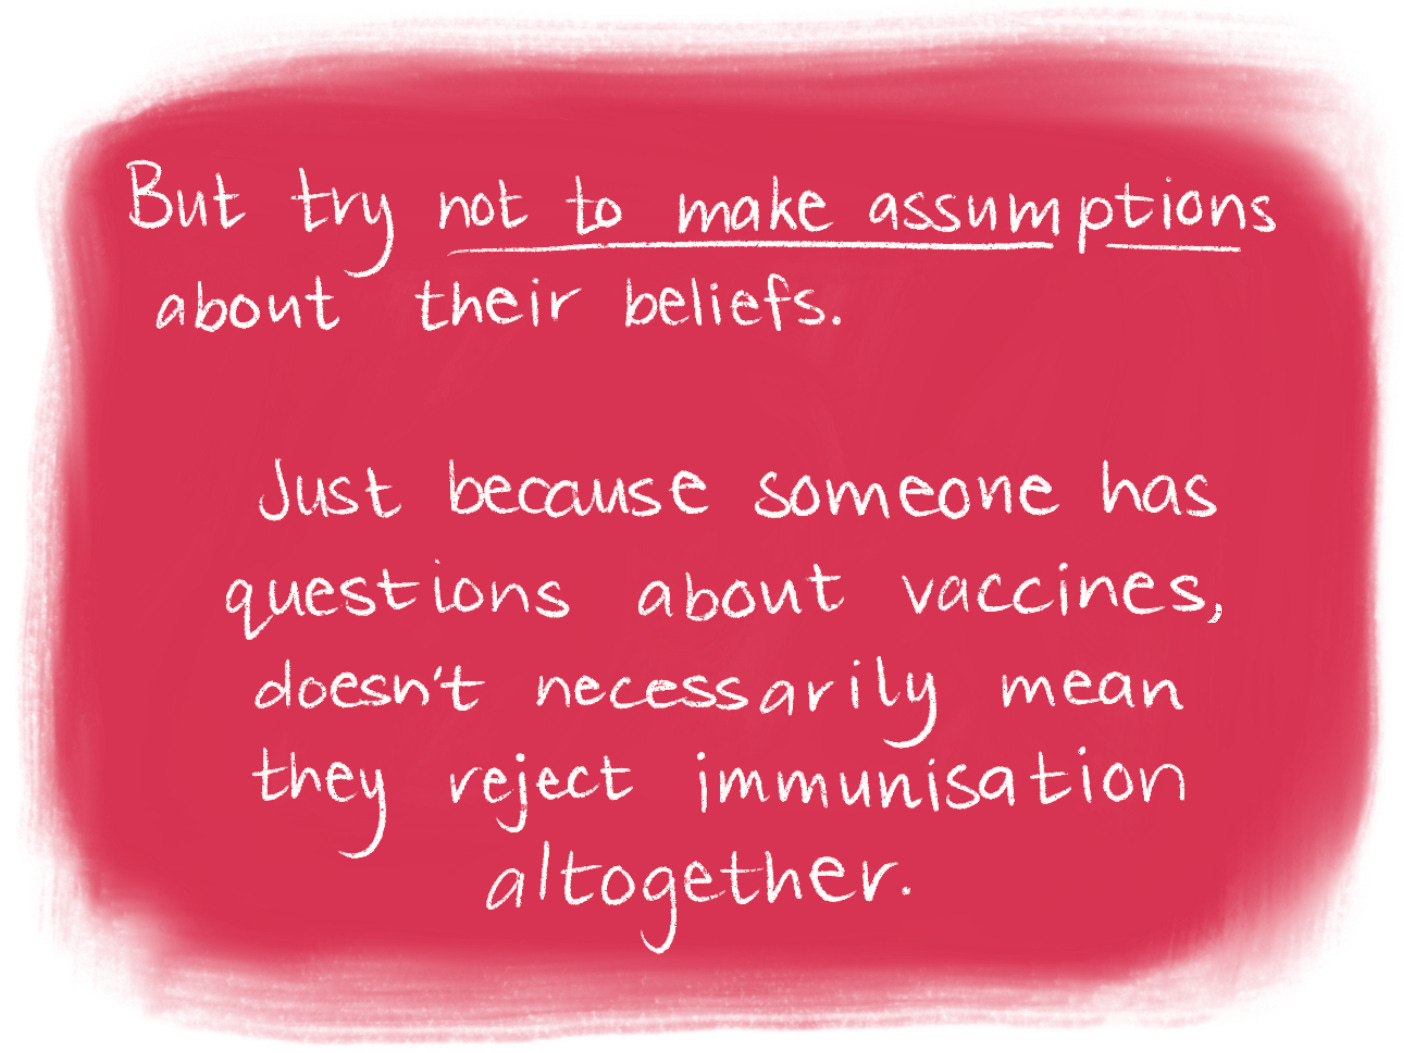 Vaccination comic scene 7 beliefs. Read the transcript below.